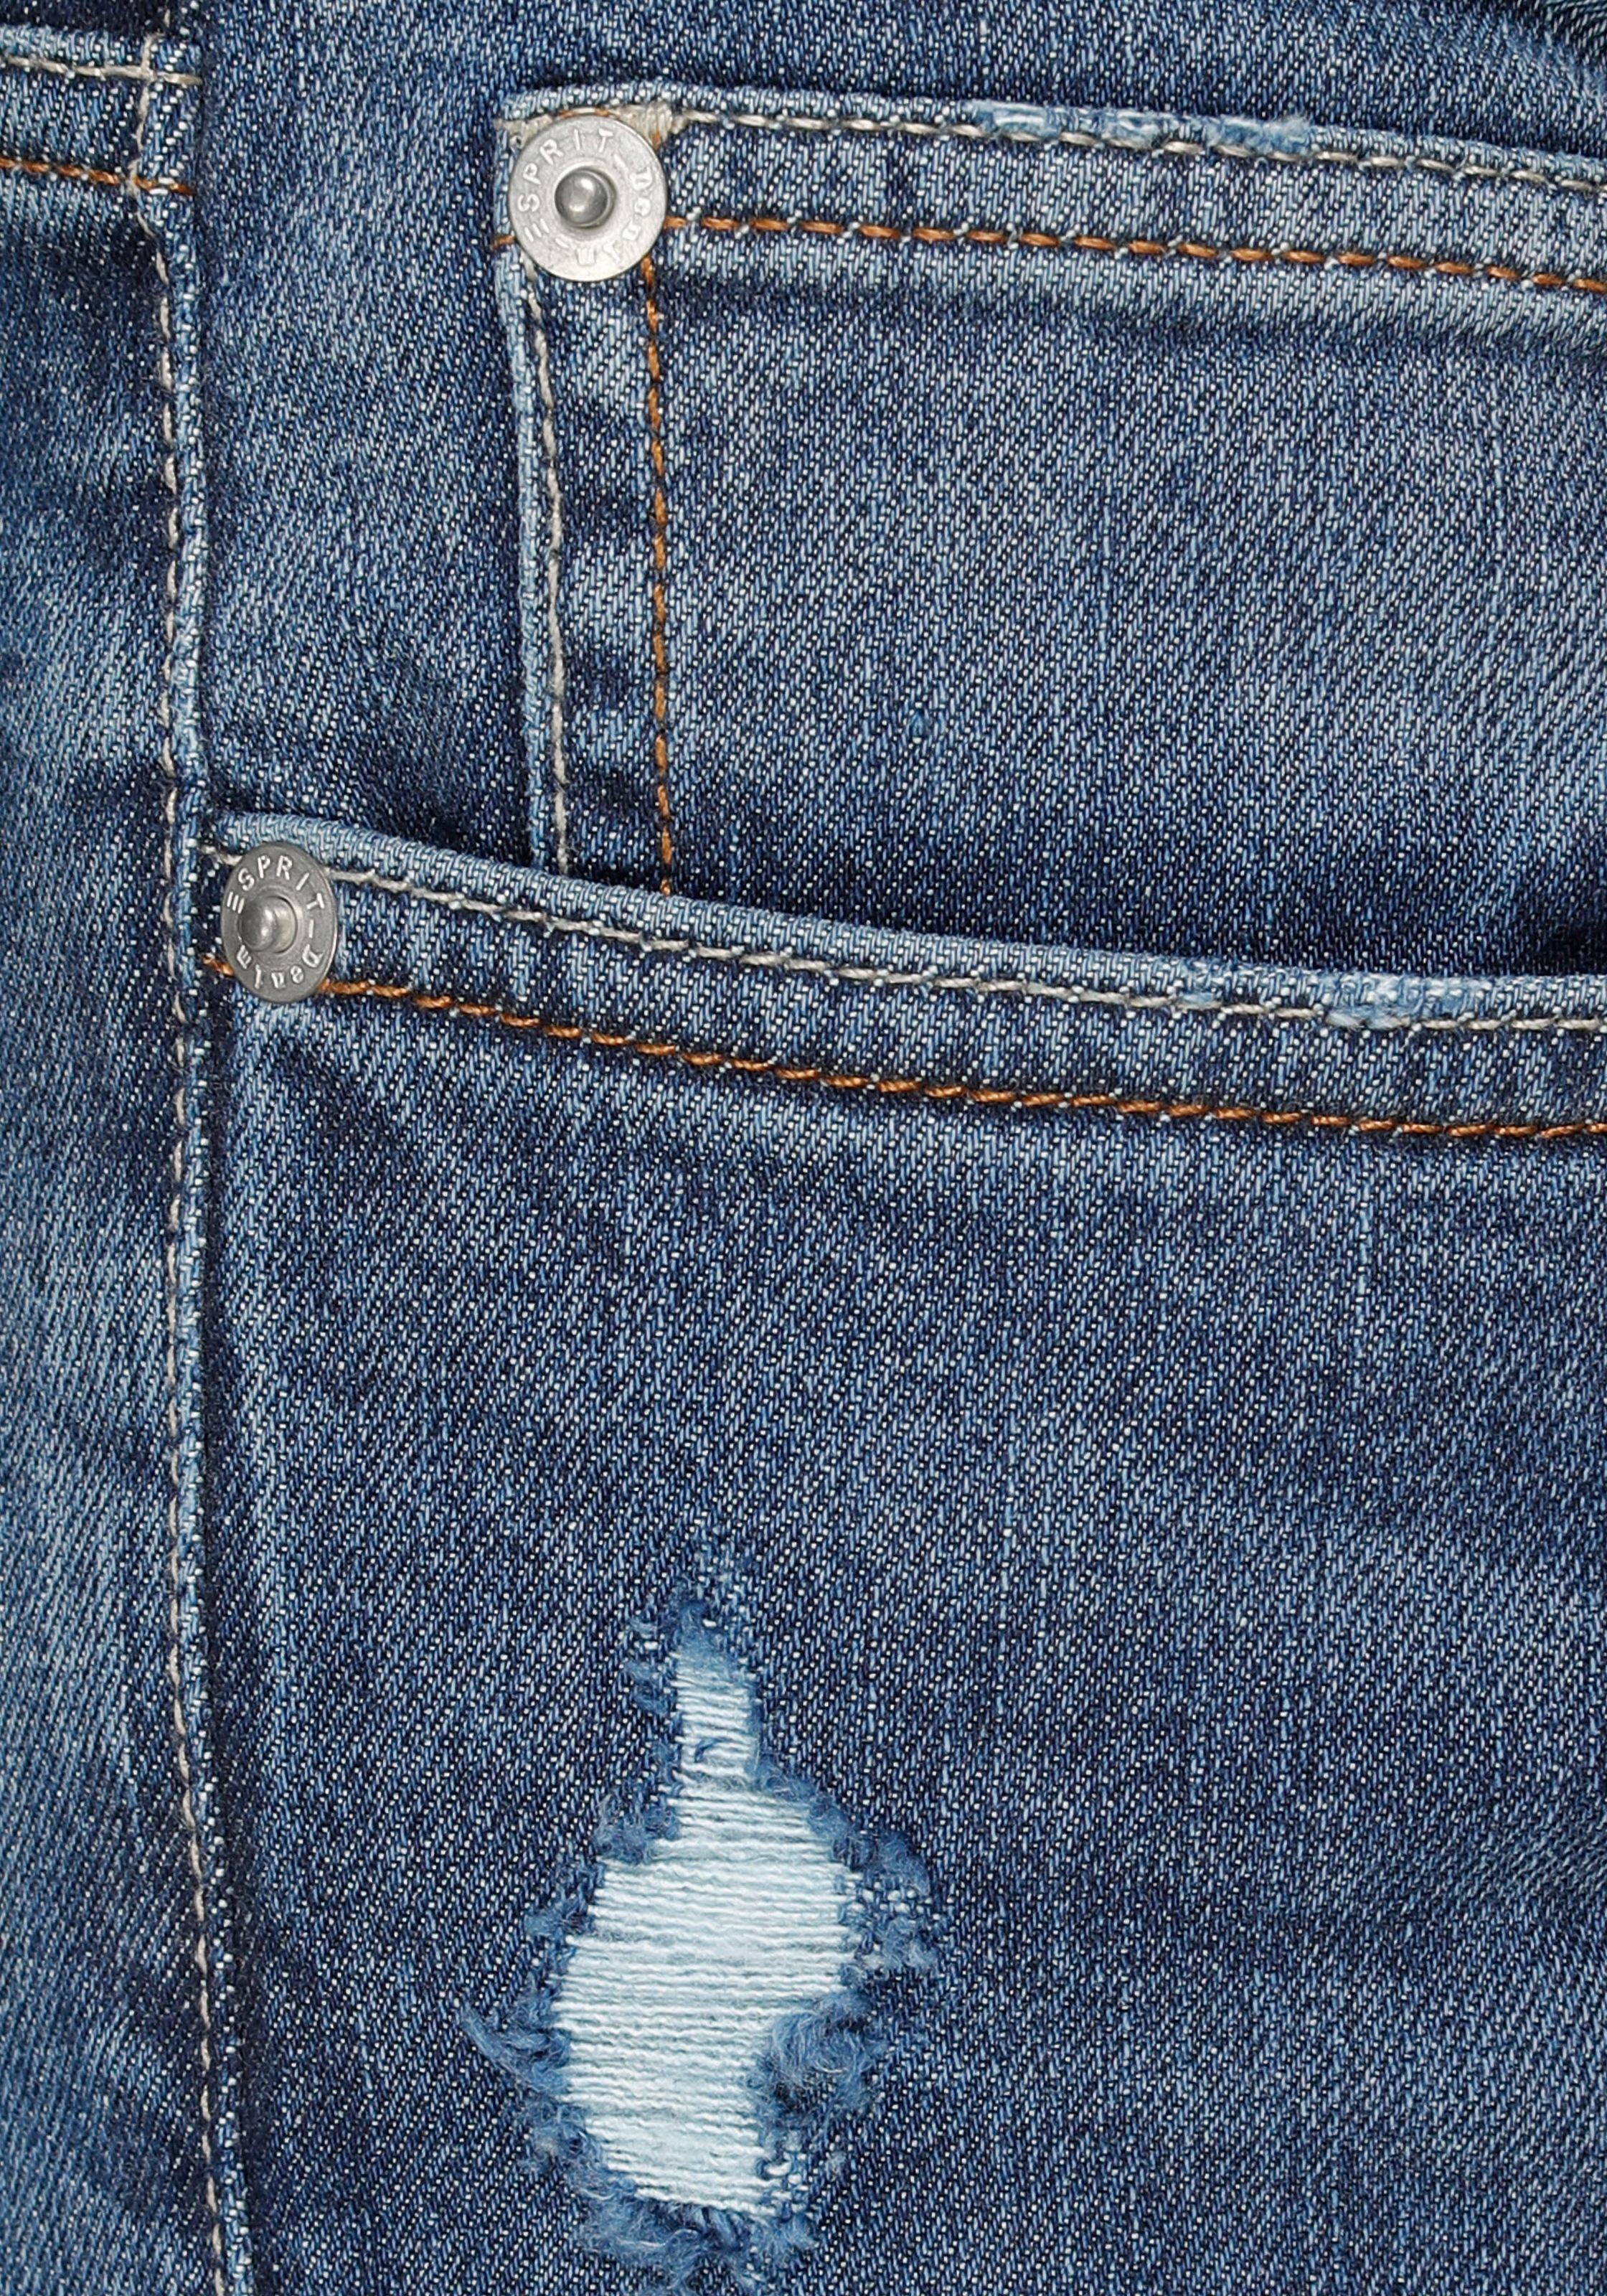 Esprit Slim-fit-Jeans, mit Destroyed-Effekten